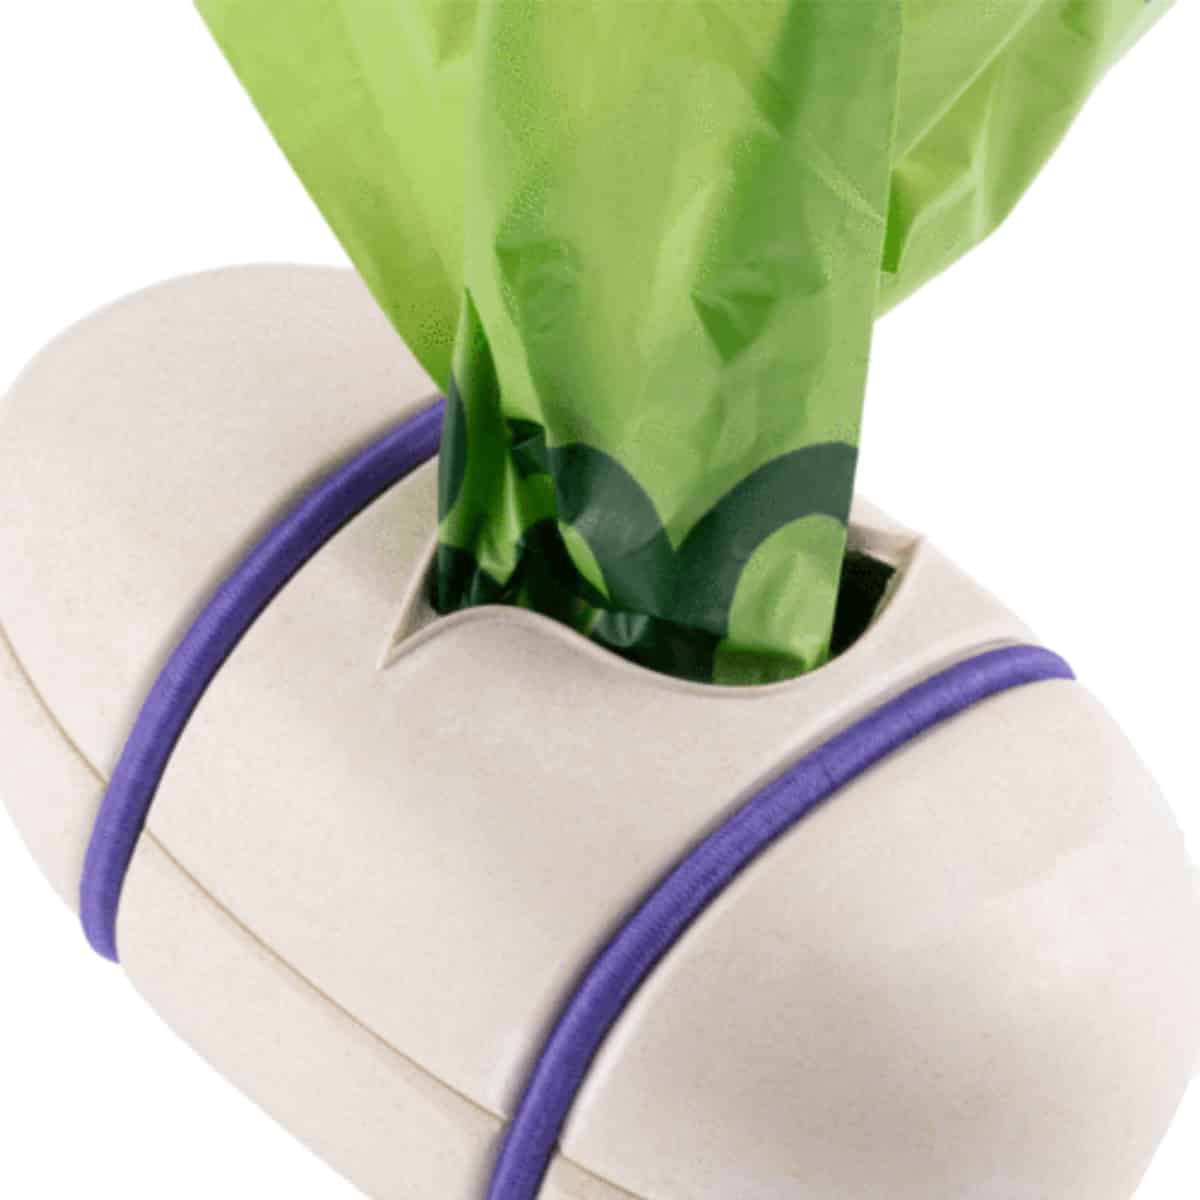 Beco Pocket Poop Bag Dispenser - Natural, with bags